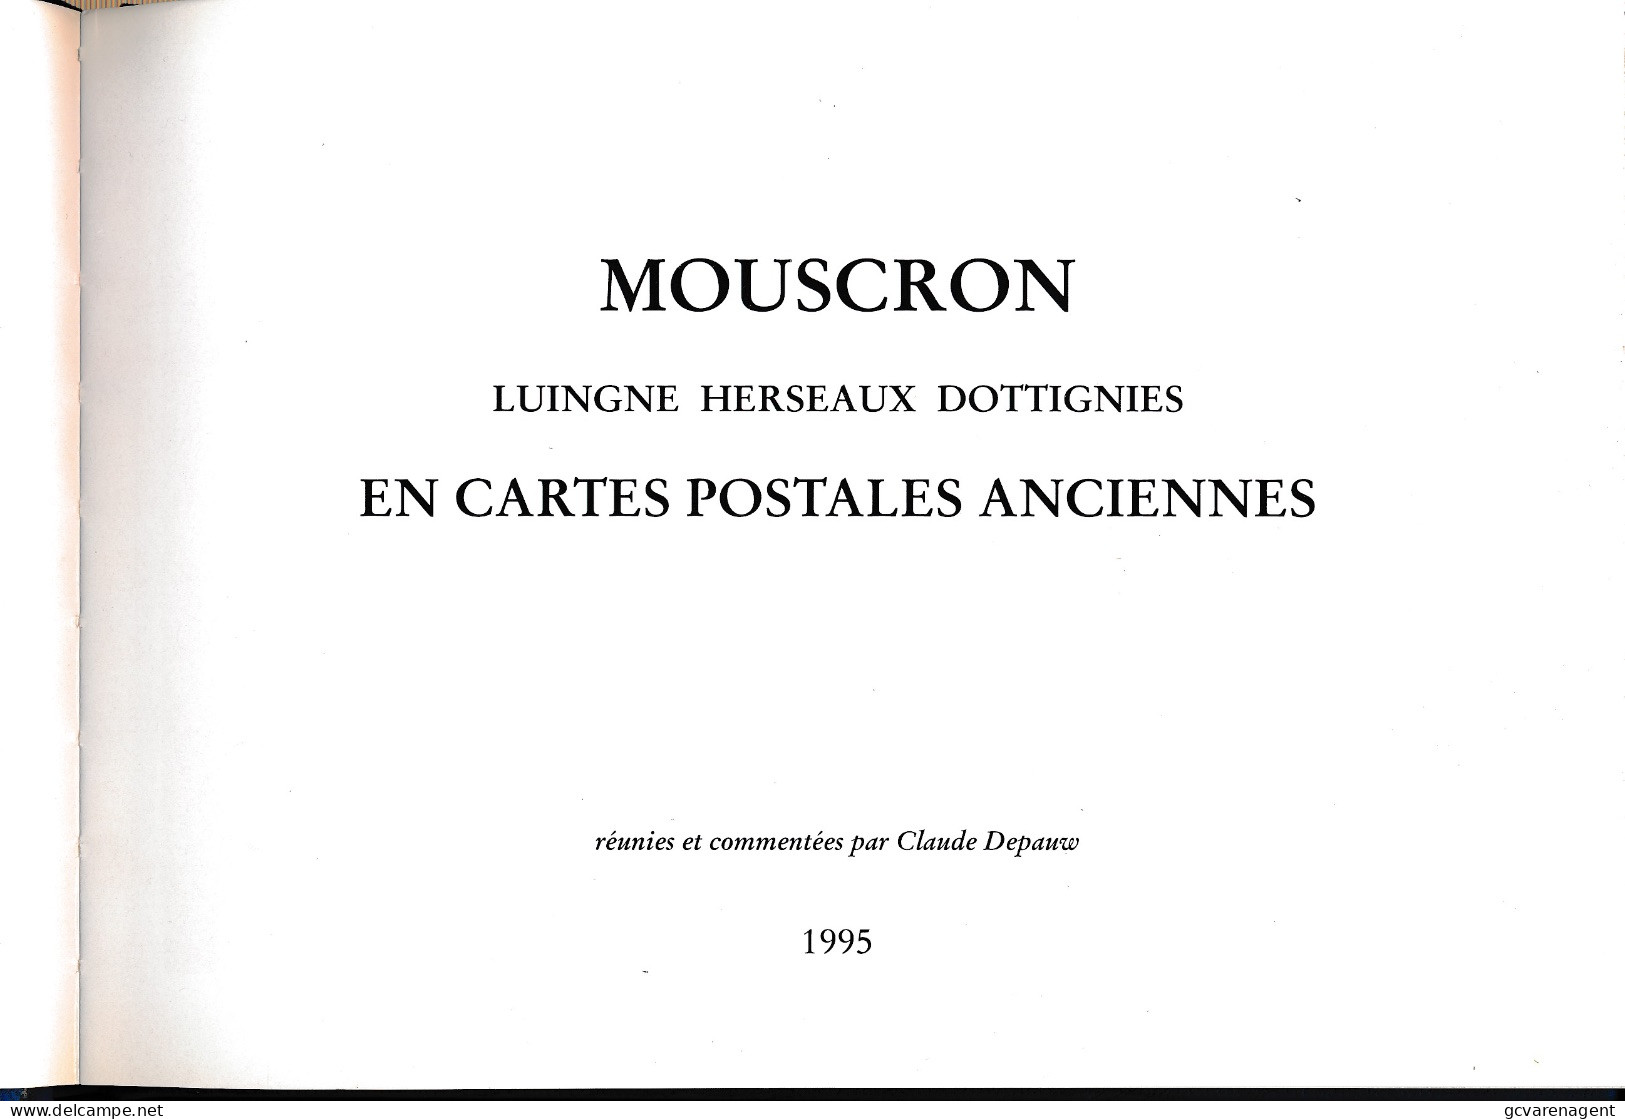 MOUSCRON  LUIGNE HERSEAUX DOTTIGNIES   TRES BON ETAT  22 X 16 X 1.5 CM   VOIR SCANS - Moeskroen